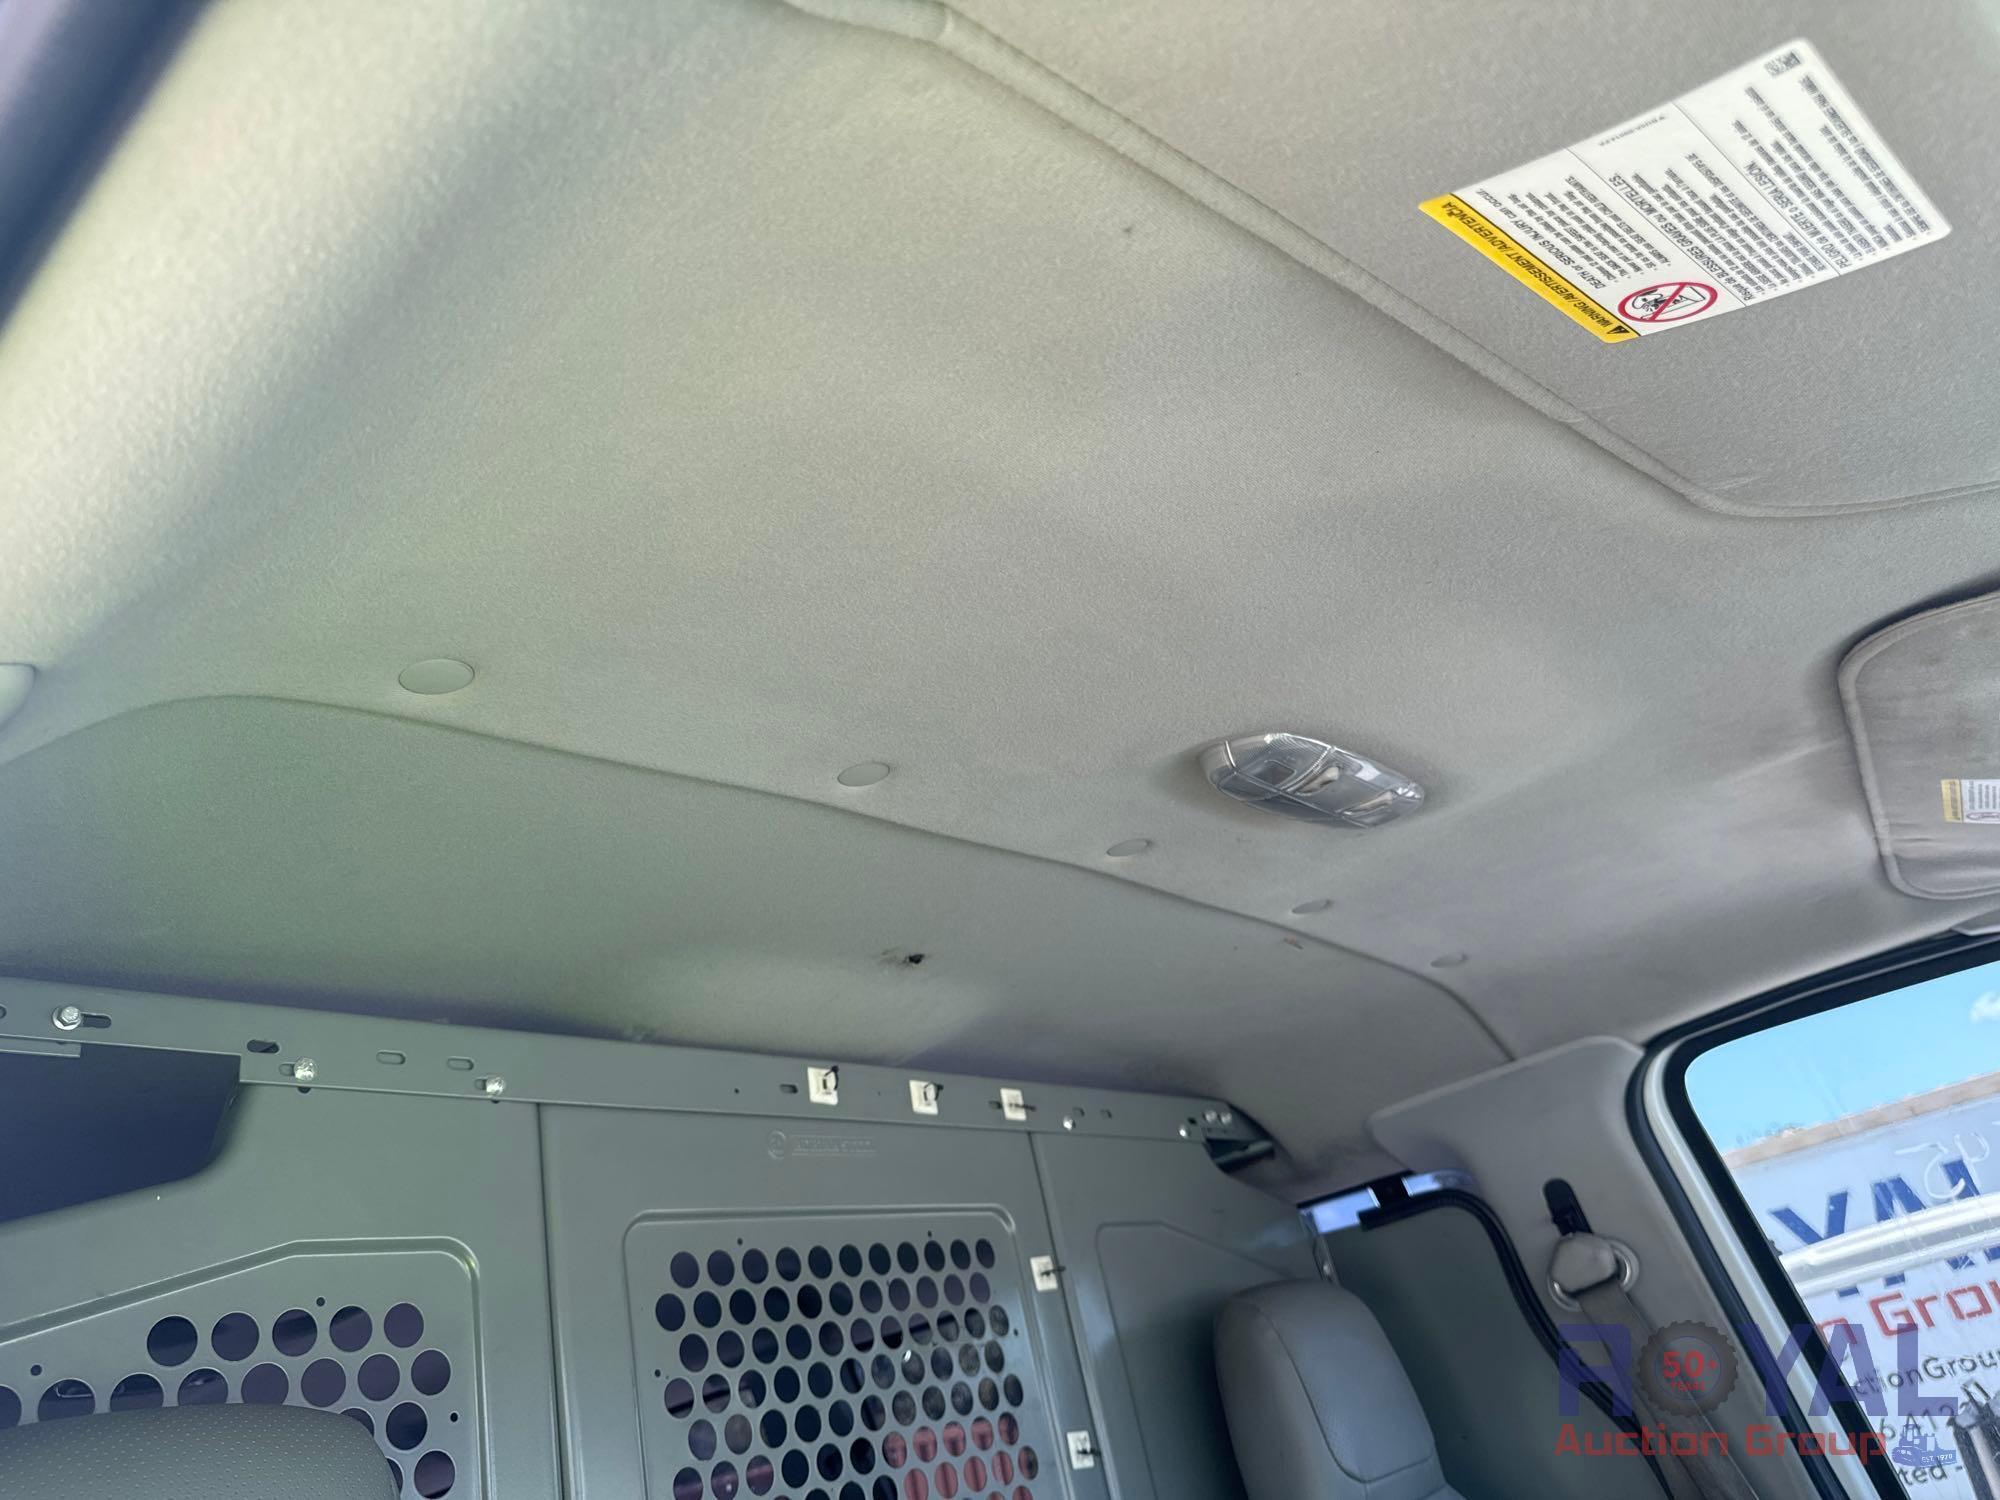 2014 Ford E-350 Passenger Van